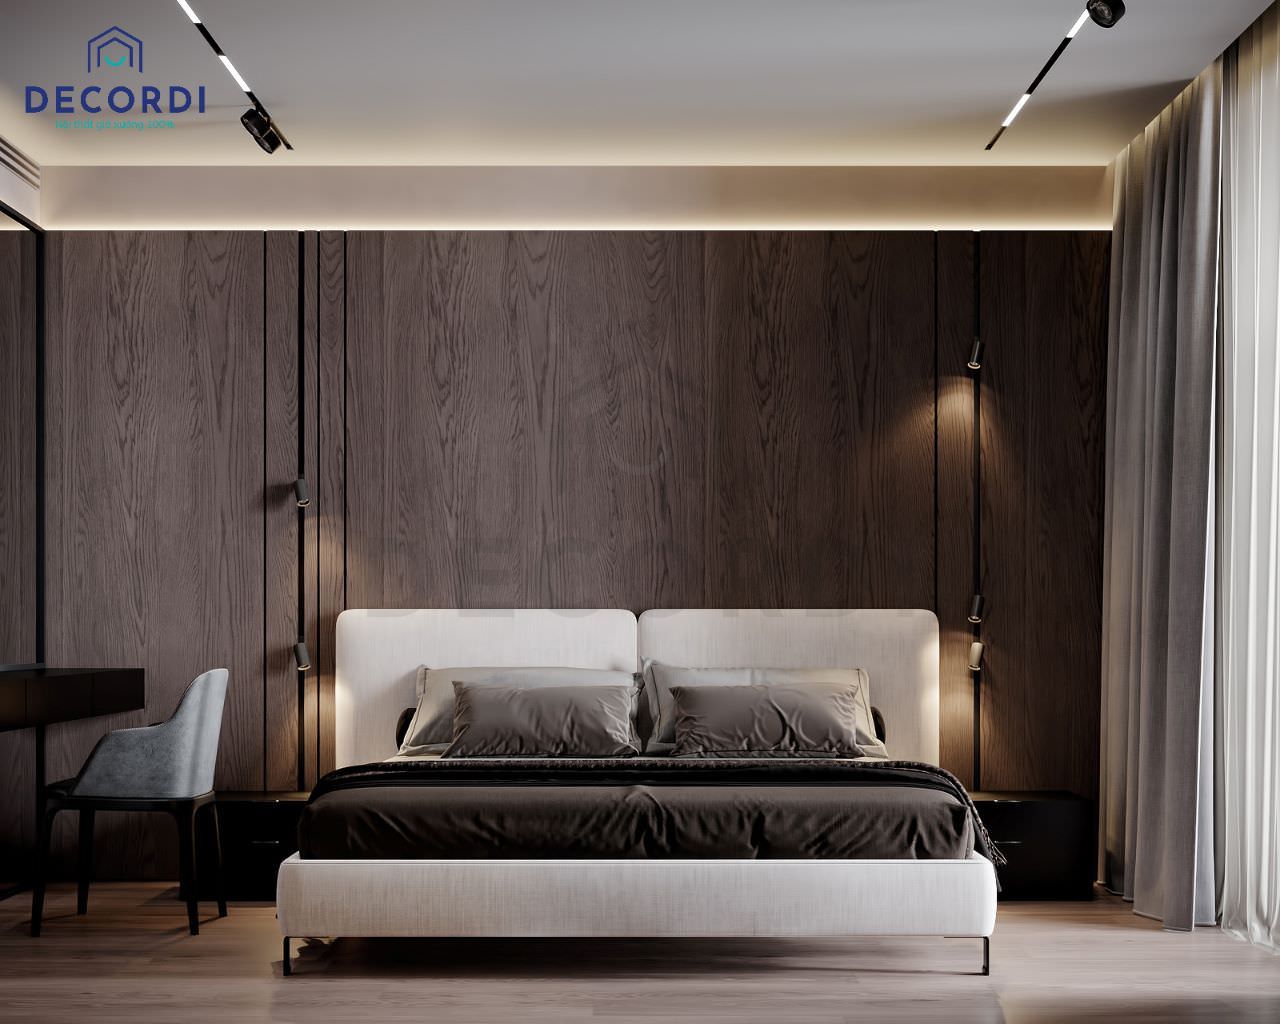 Thiết kế phòng ngủ đơn giản tiết kiệm với phong cách Minimalism cùng tông màu xám của vách ốp tường